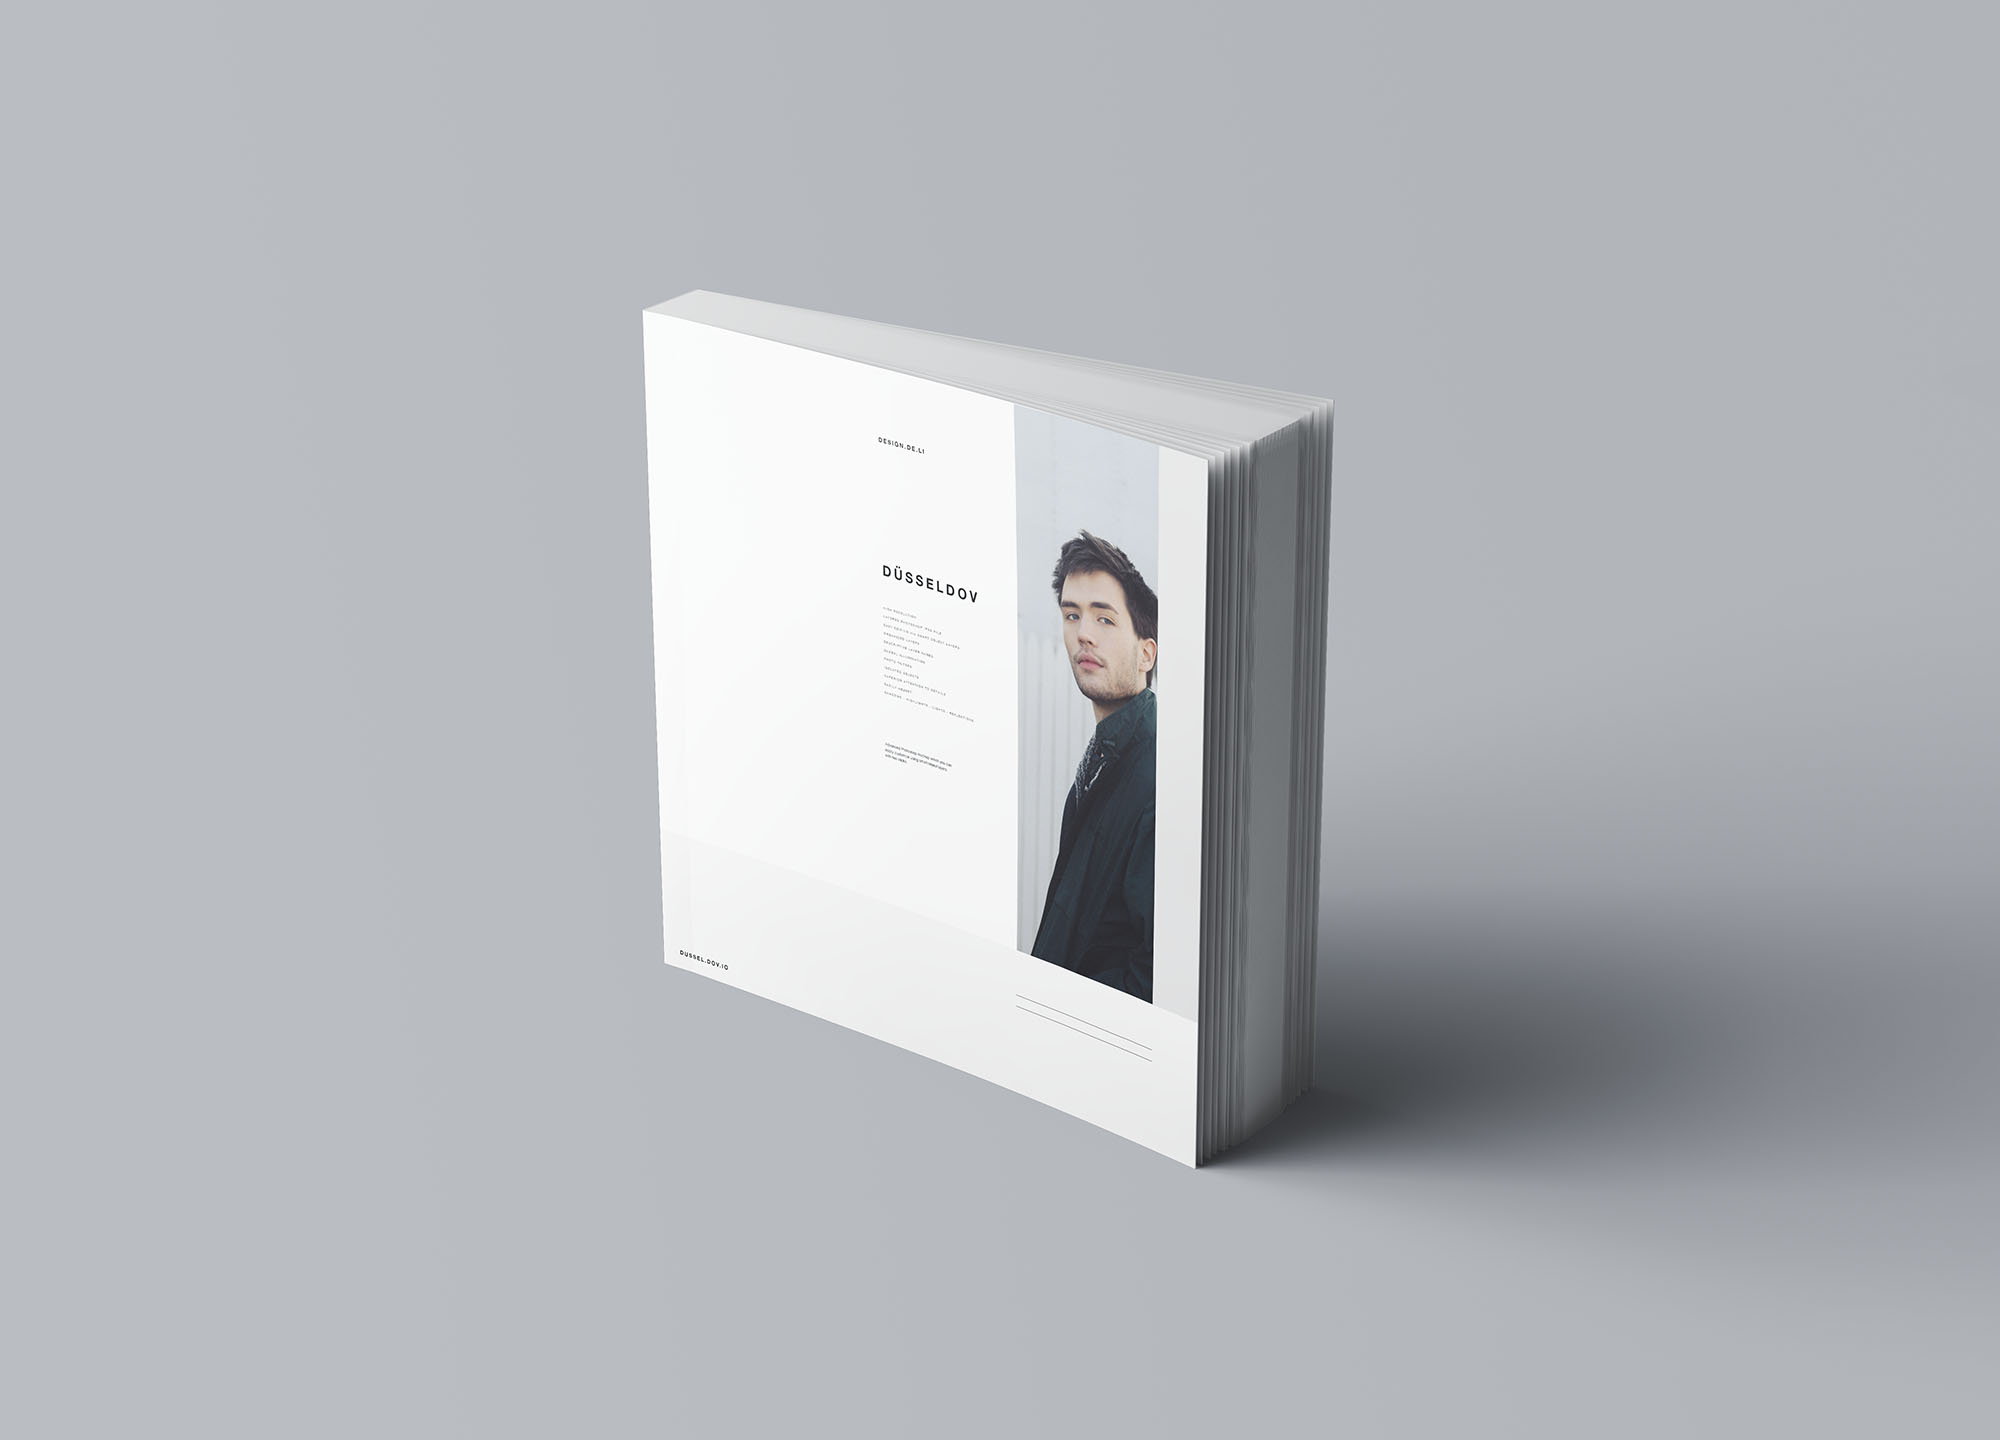 方形软封图书内页版式设计效果图样机蚂蚁素材精选 Square Softcover Book Mockup插图(6)